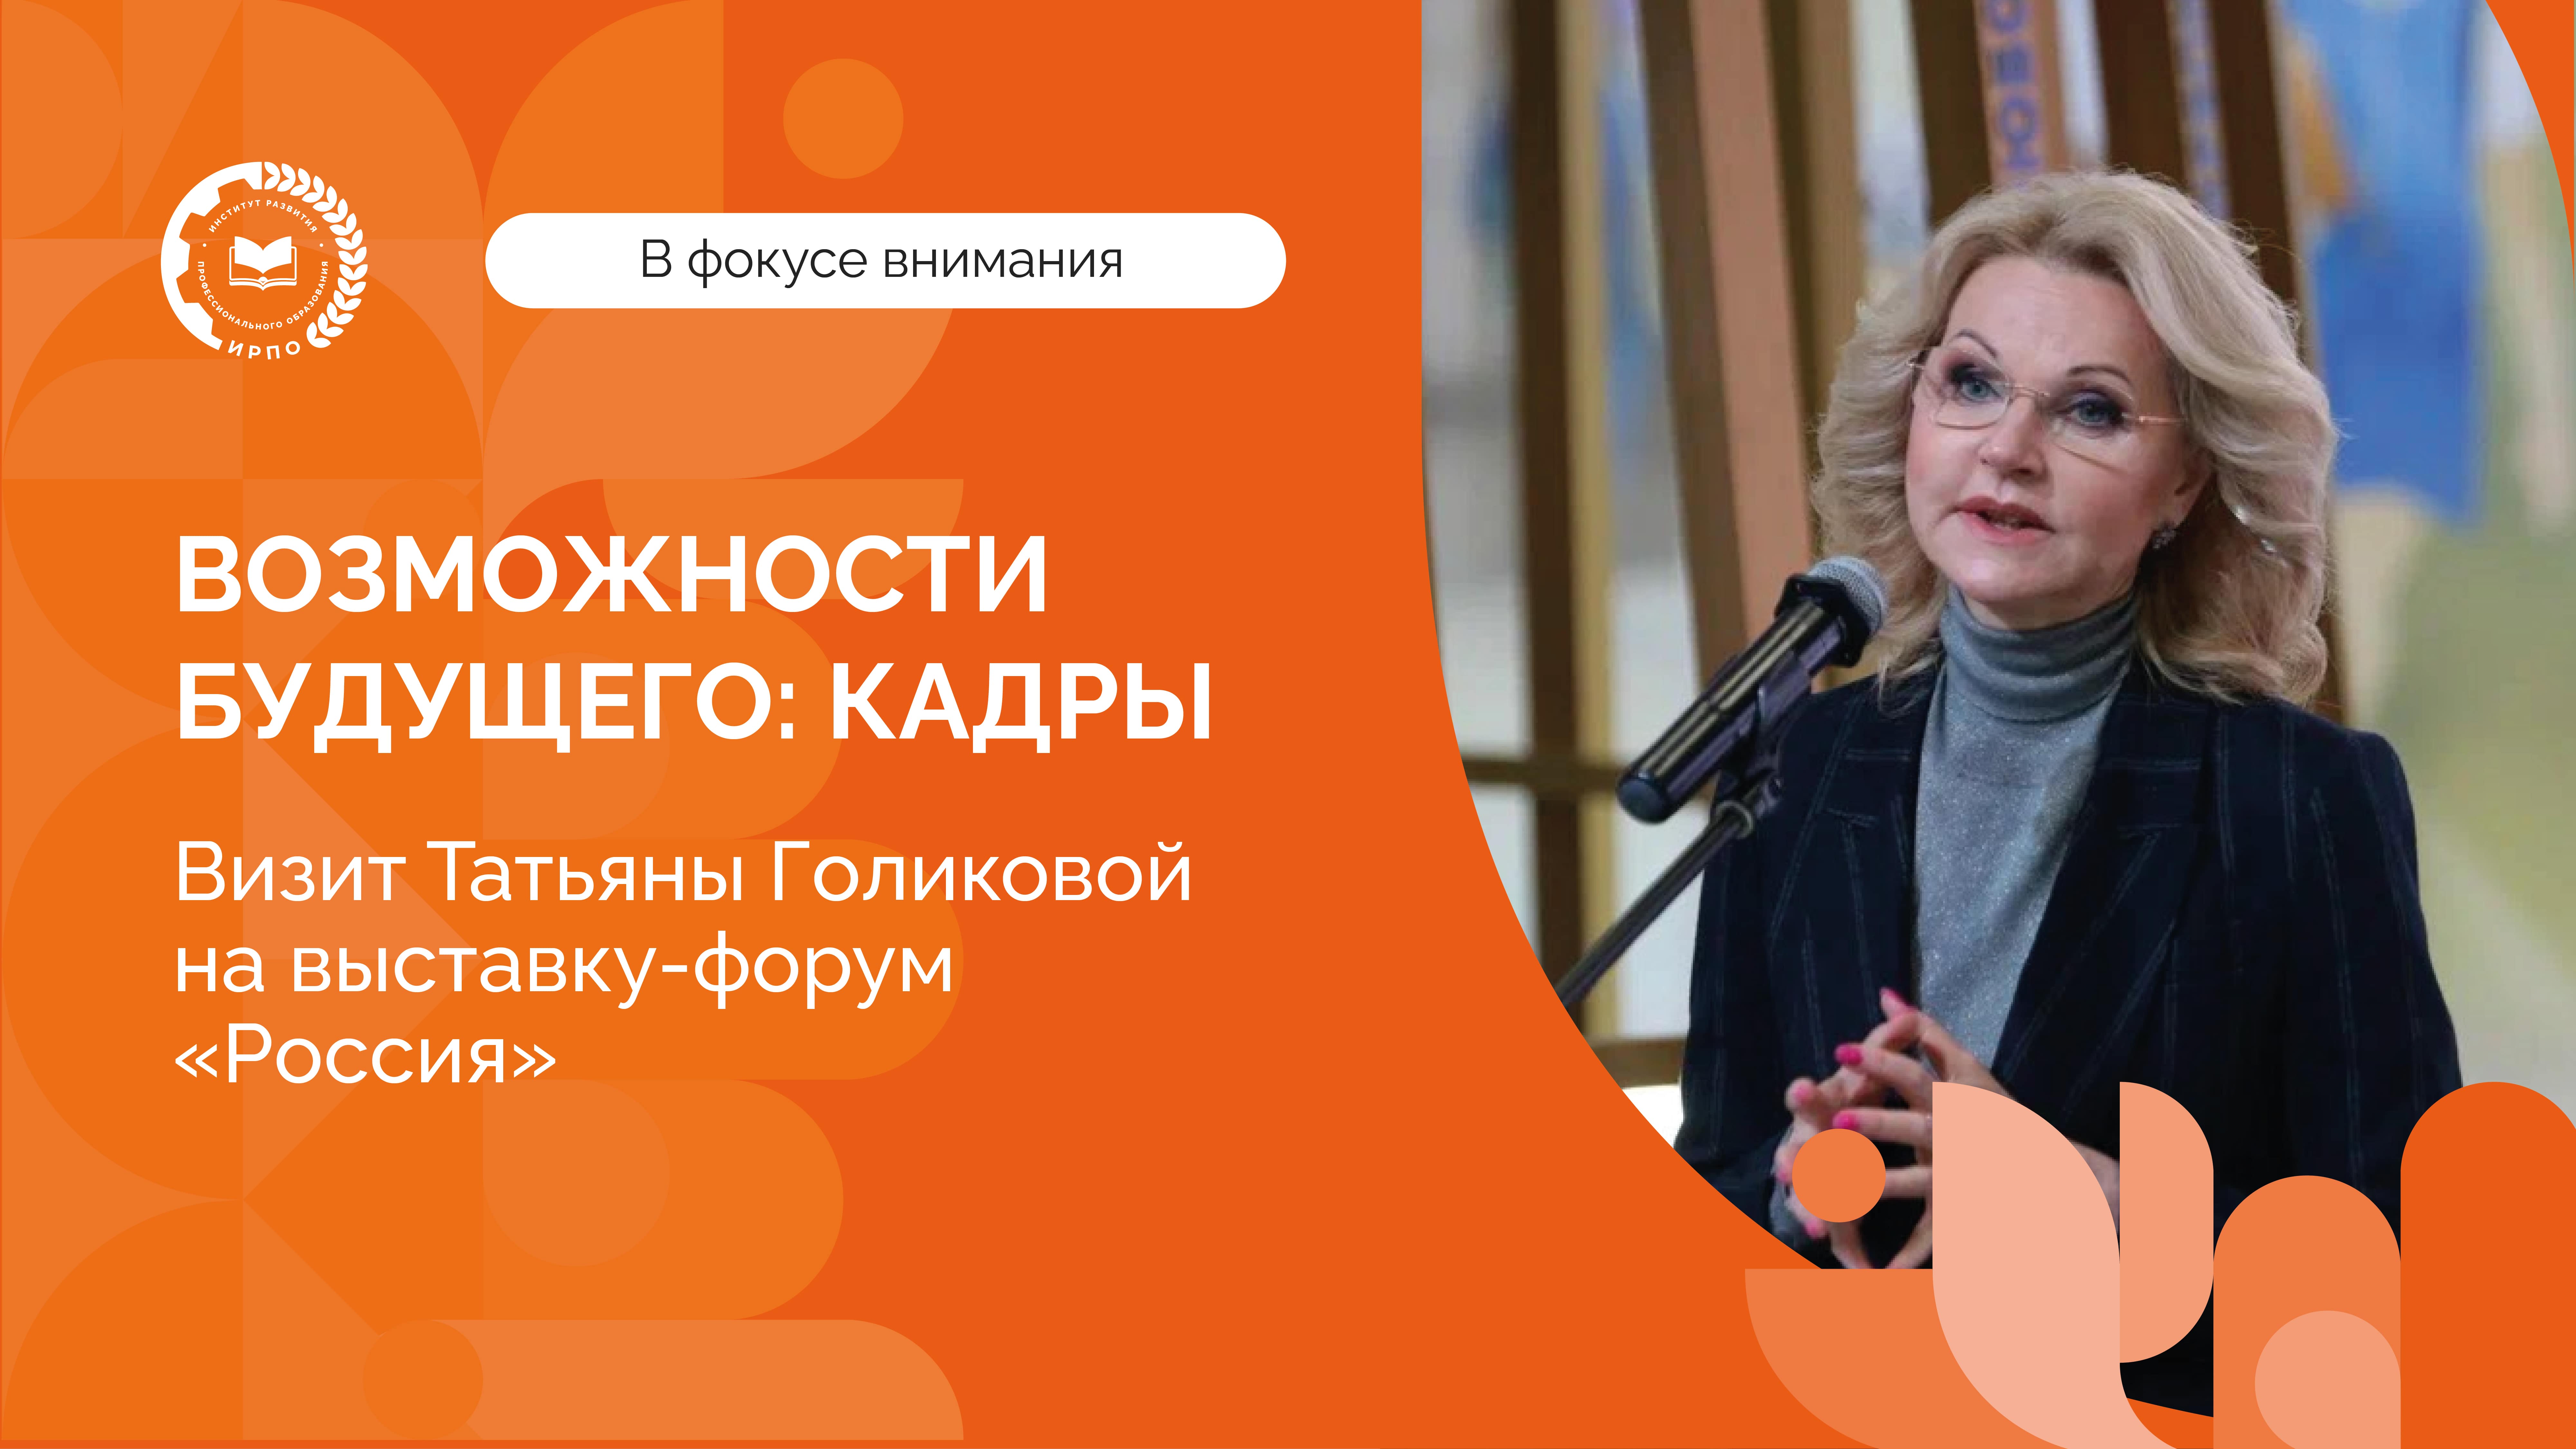 Татьяна Голикова на выставке-форуме «Россия»: пленарное заседание «Возможности будущего: кадры»